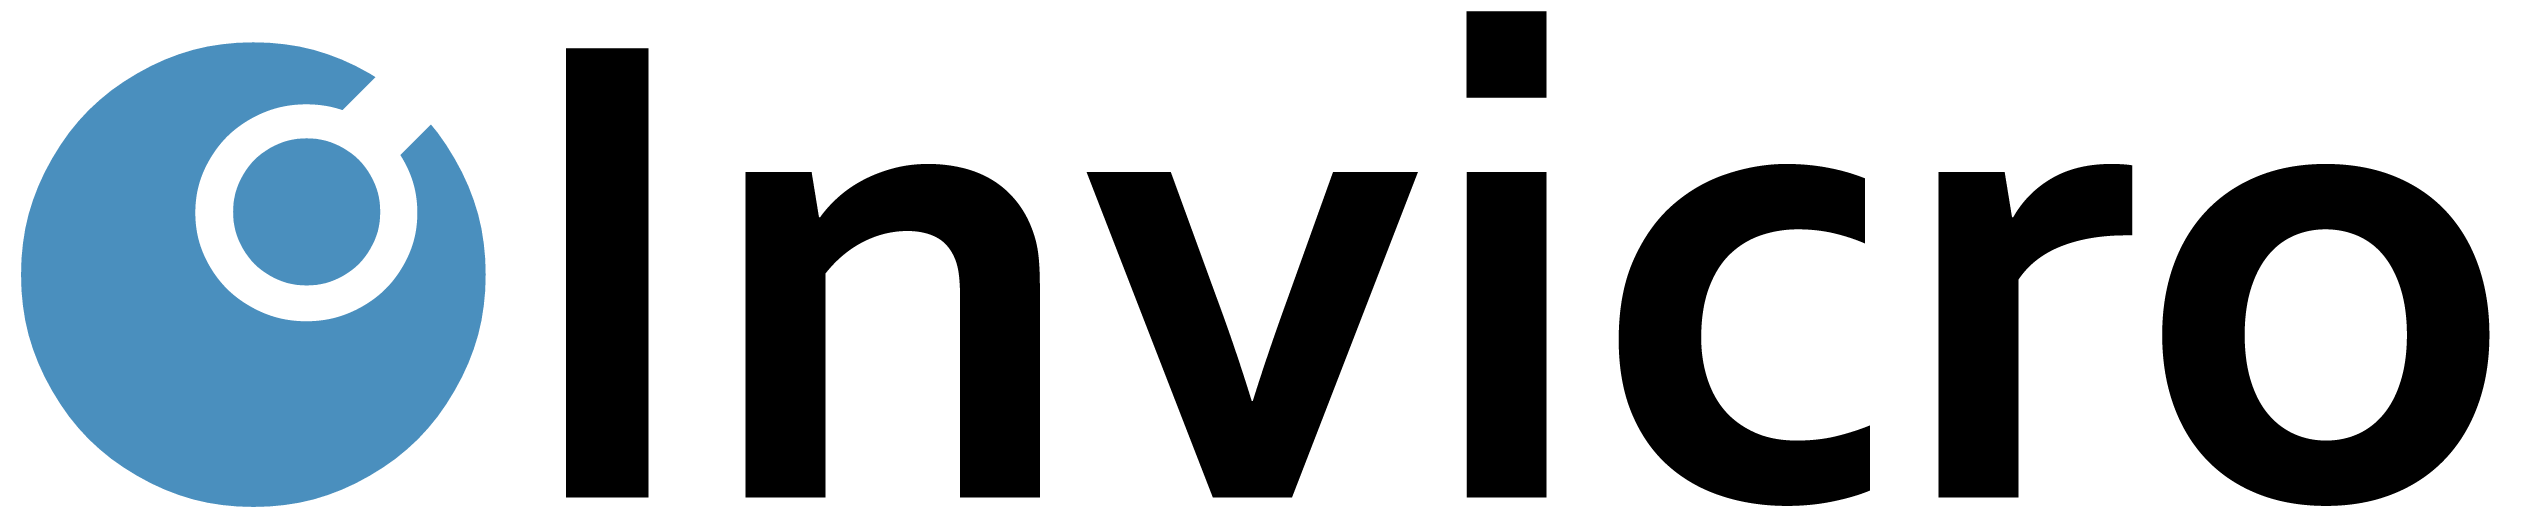 Invicro logo